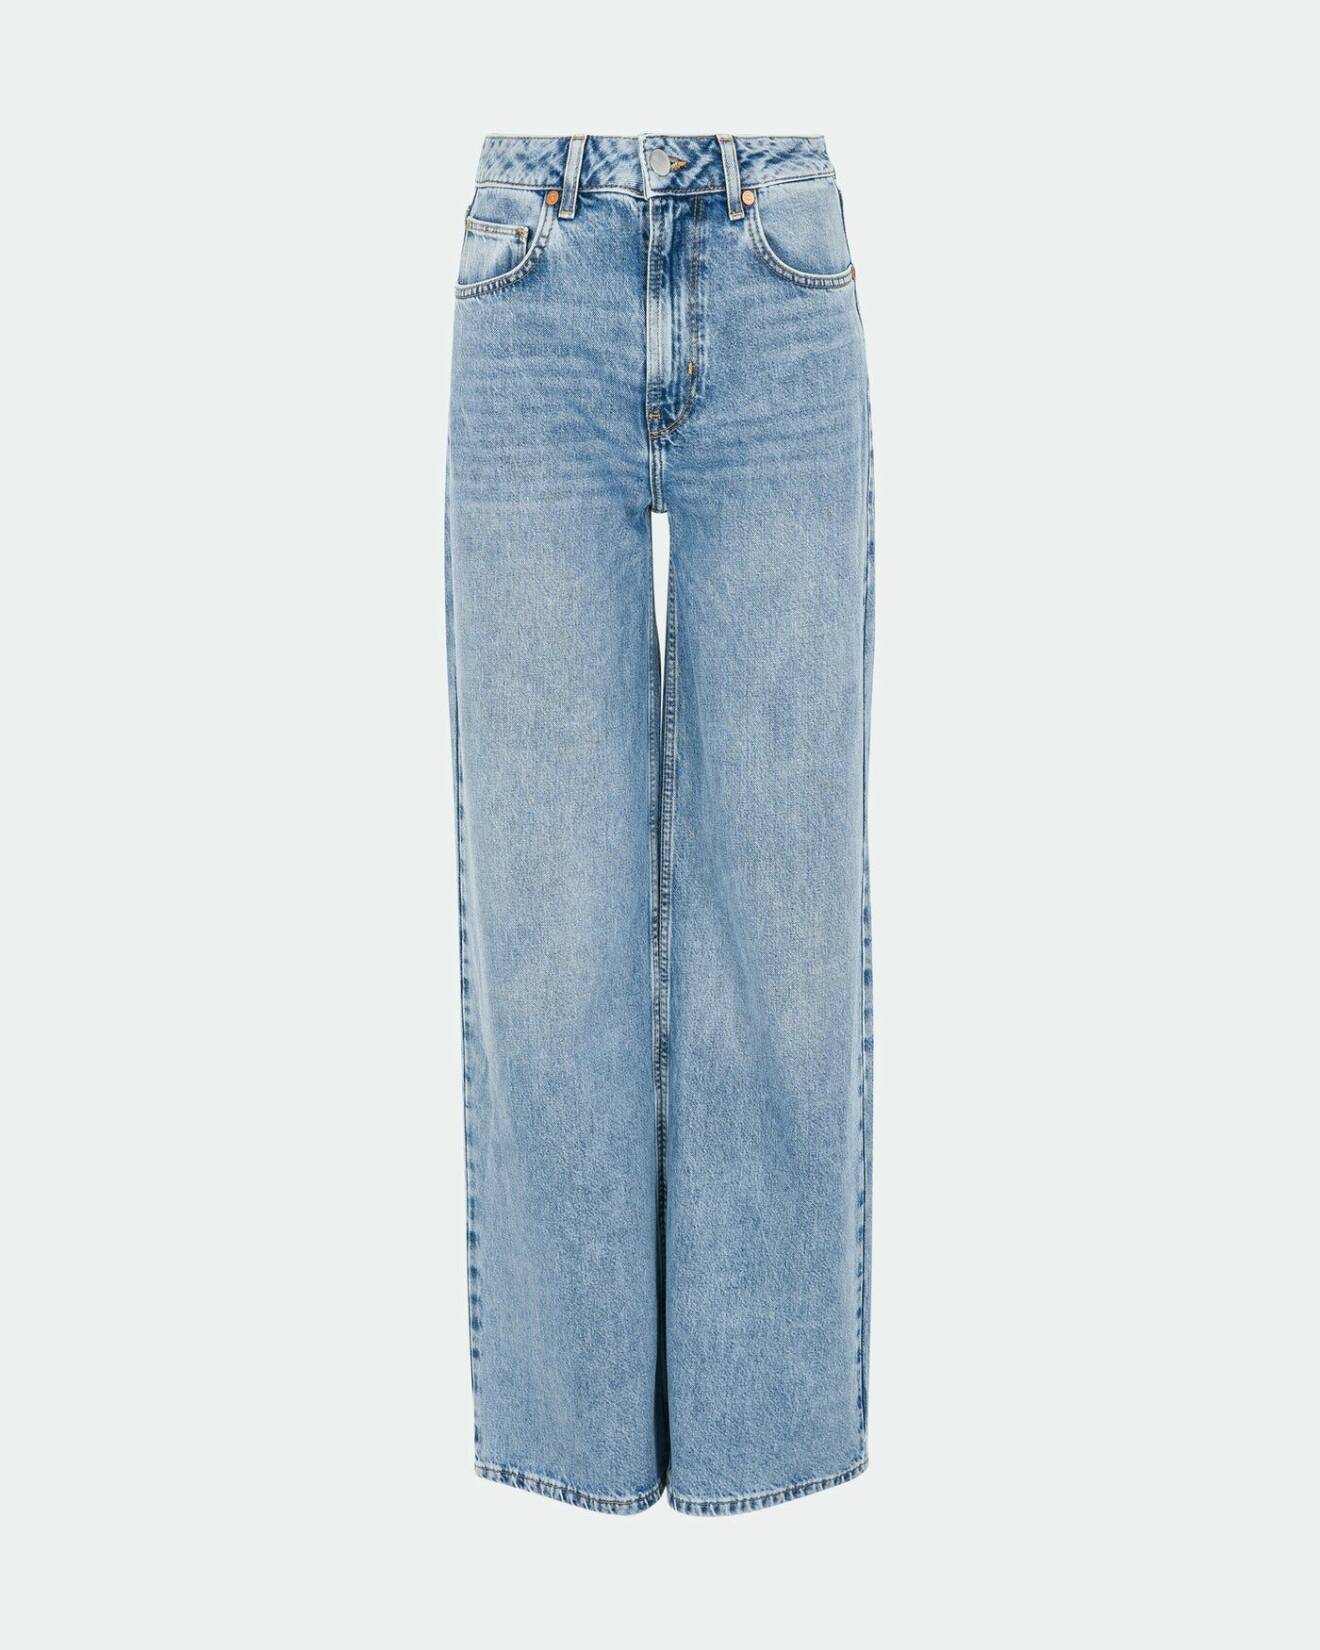 Ljusblå jeans med hög midja och utställda ben. Jeans från Bikbok.